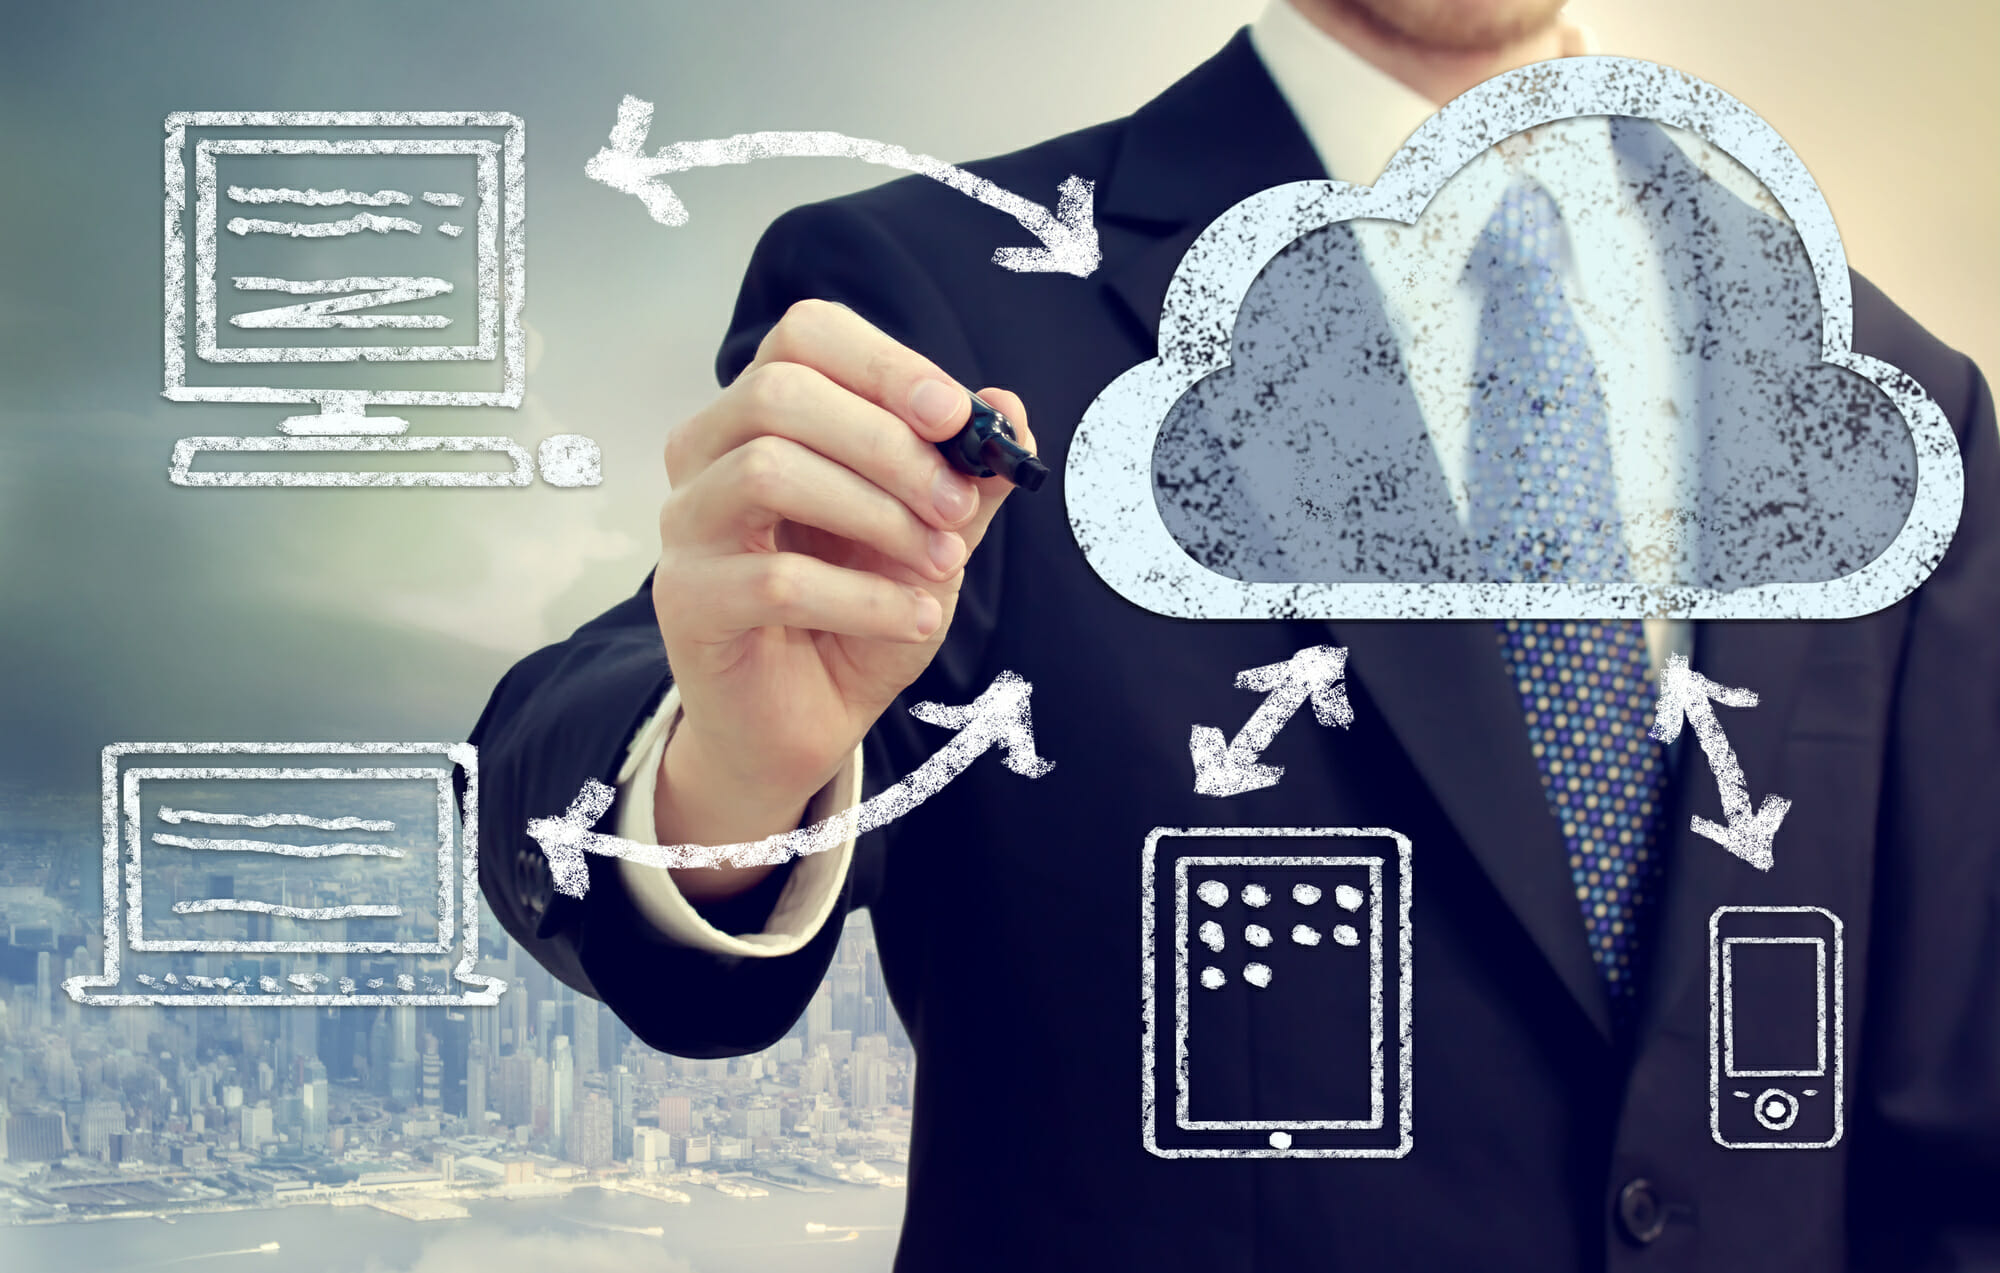 Cloud Migration Services: What are Common Cloud Migration Challenges?